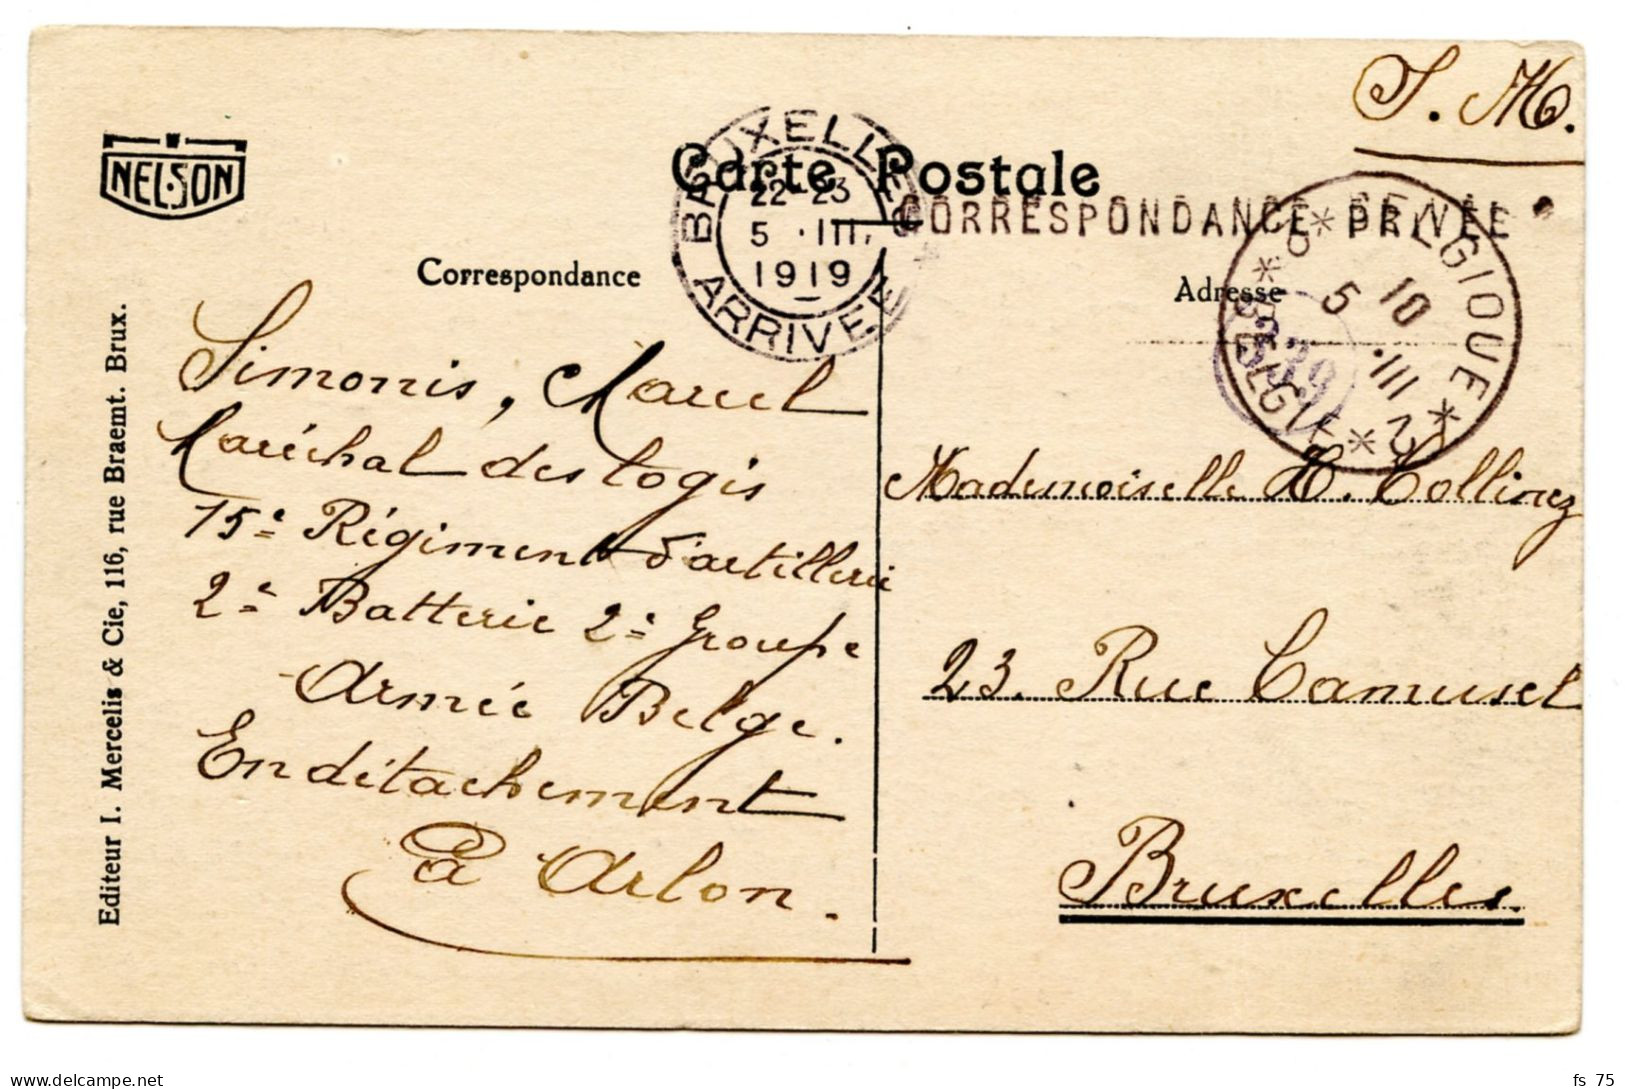 BELGIQUE - SIMPLE CERCLE BILINGUE 2 * BELGIQUE * 2 + GRIFFE CORRESPONDANCE PRIVEE SUR CARTE POSTALE D'ARLON, 1919 - Lettres & Documents